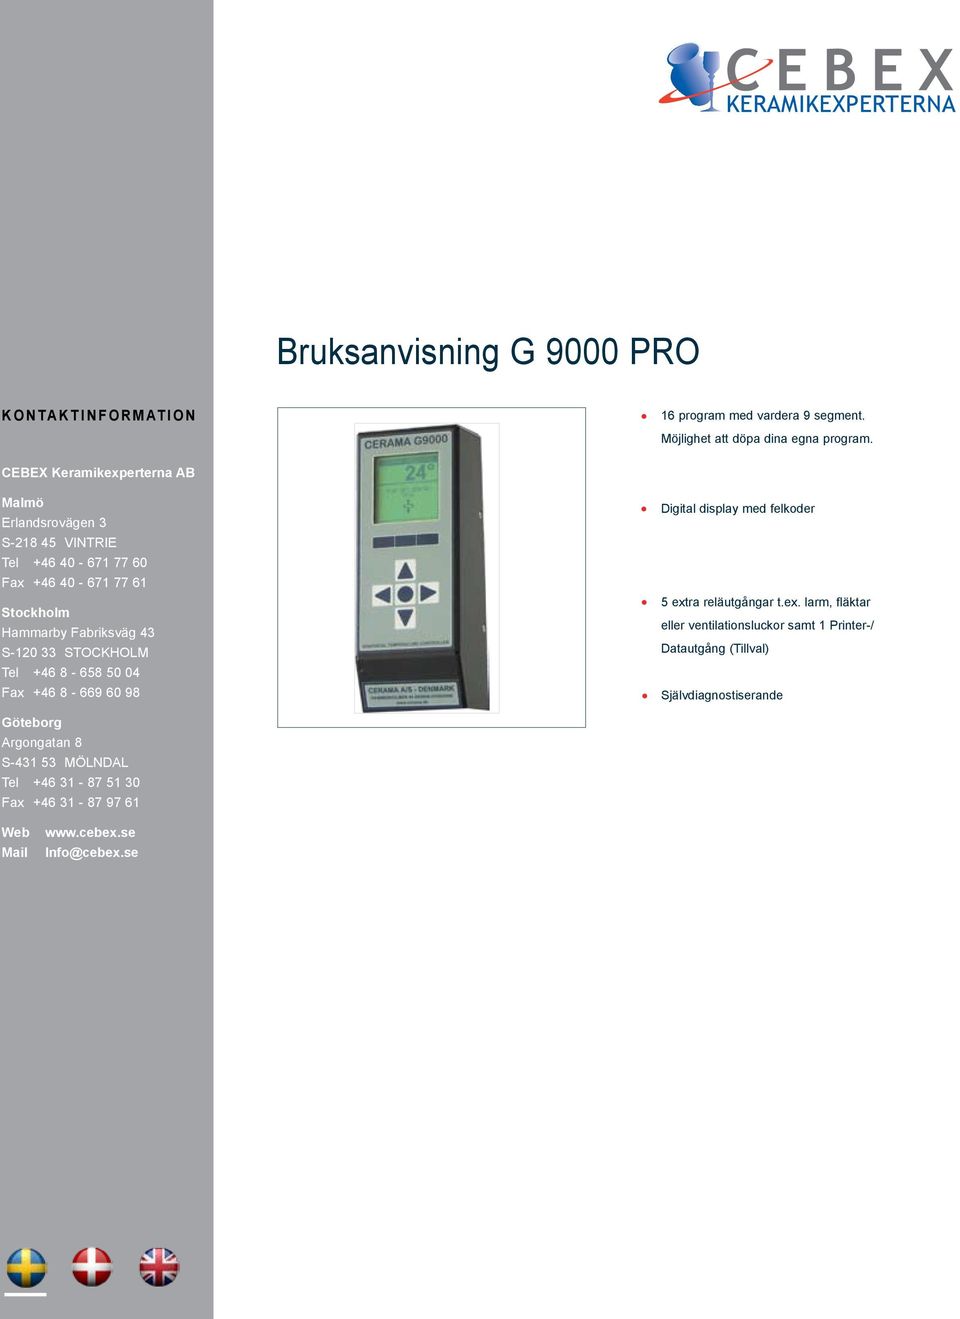 S-120 33 STOCKHOLM Tel +46 8-658 50 04 Fax +46 8-669 60 98 Digital display med felkoder 5 ext